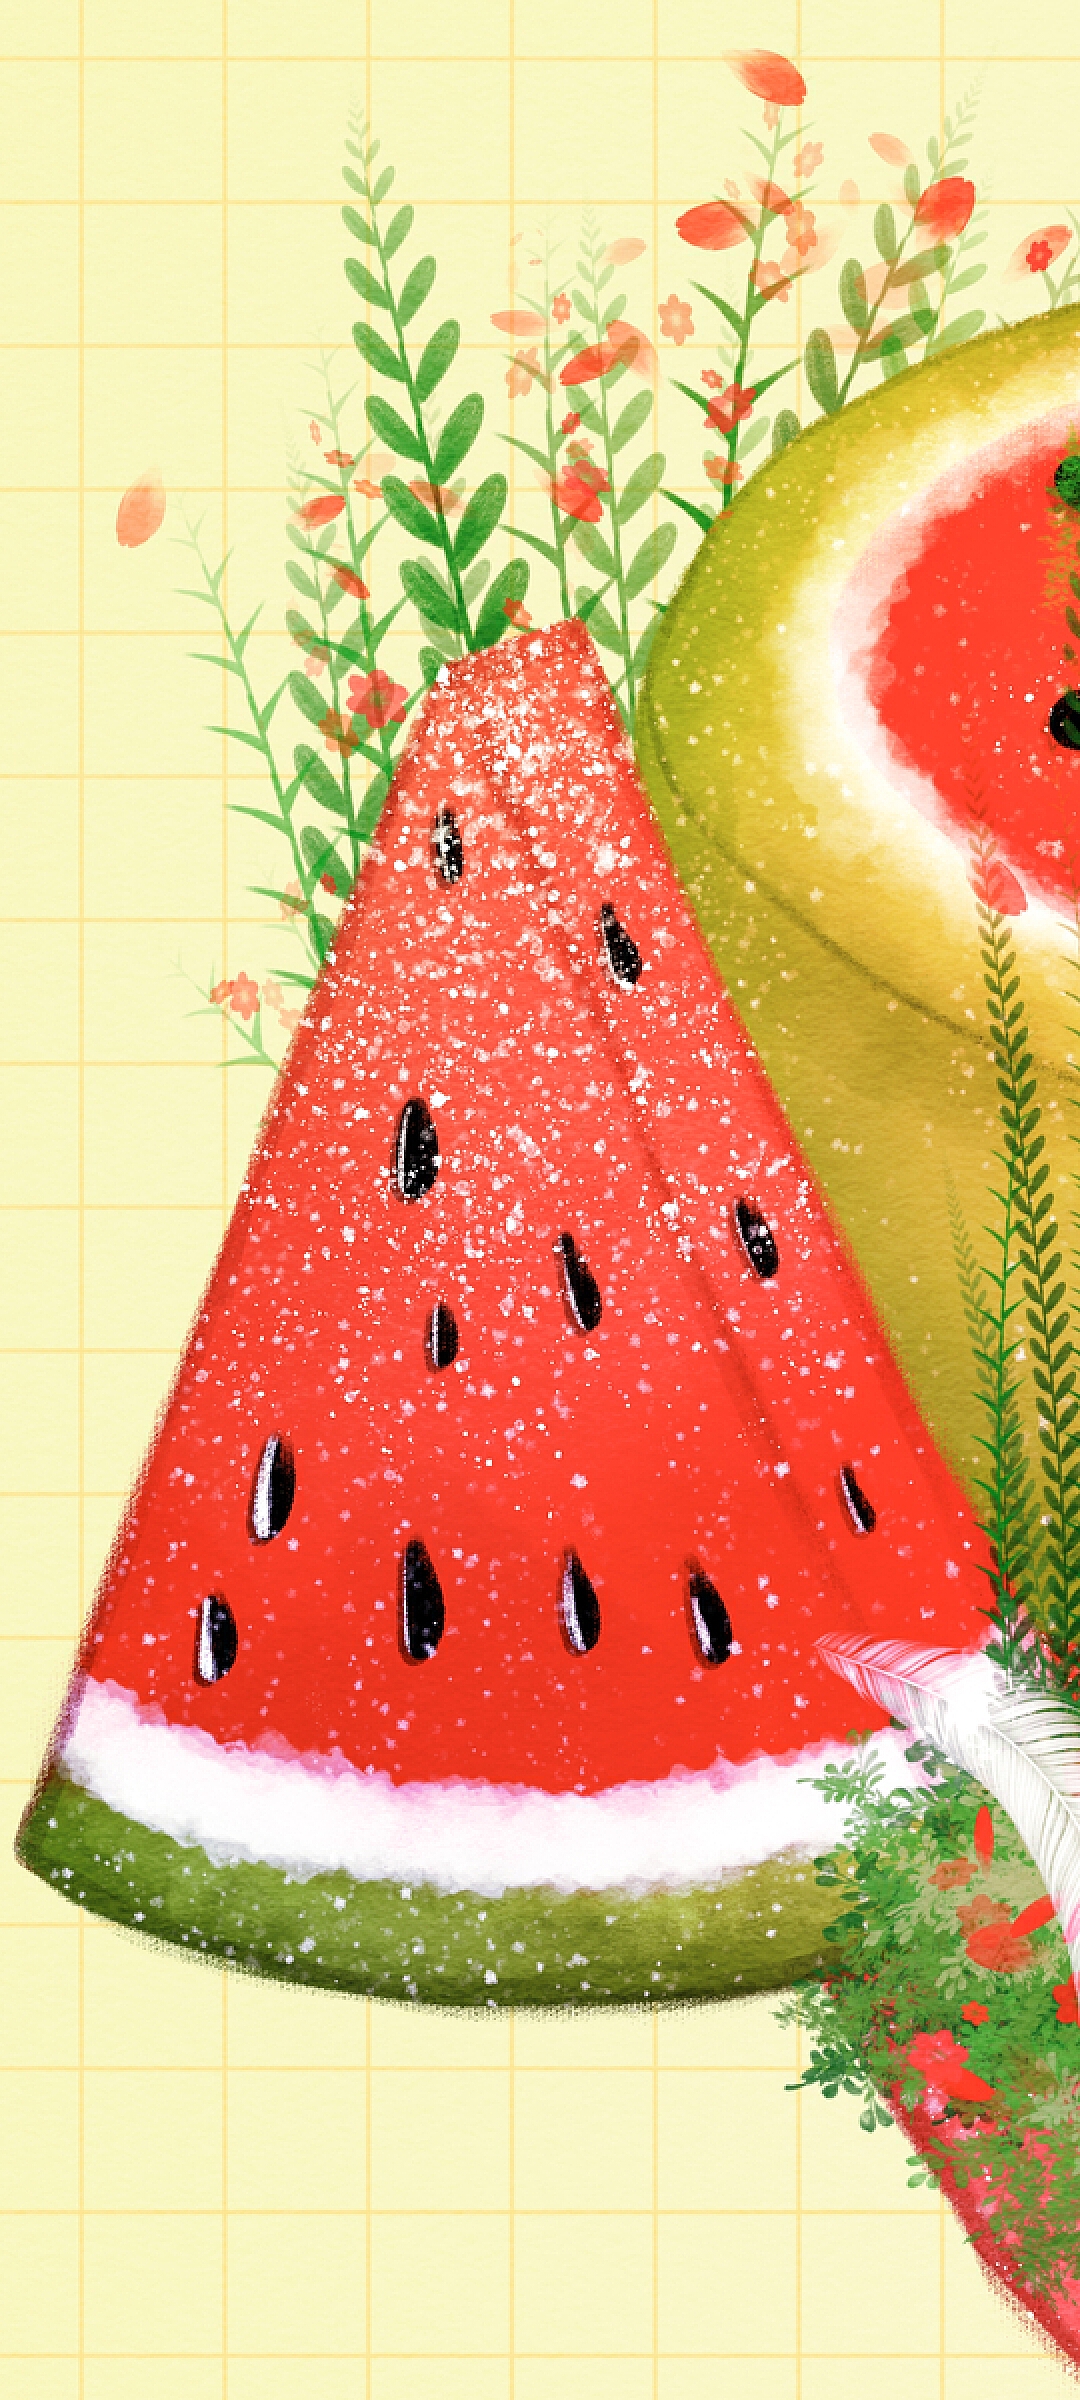 五顏六色的夏季西瓜蛋糕 西瓜蛋糕配生奶油 照片背景圖桌布圖片免費下載 - Pngtree